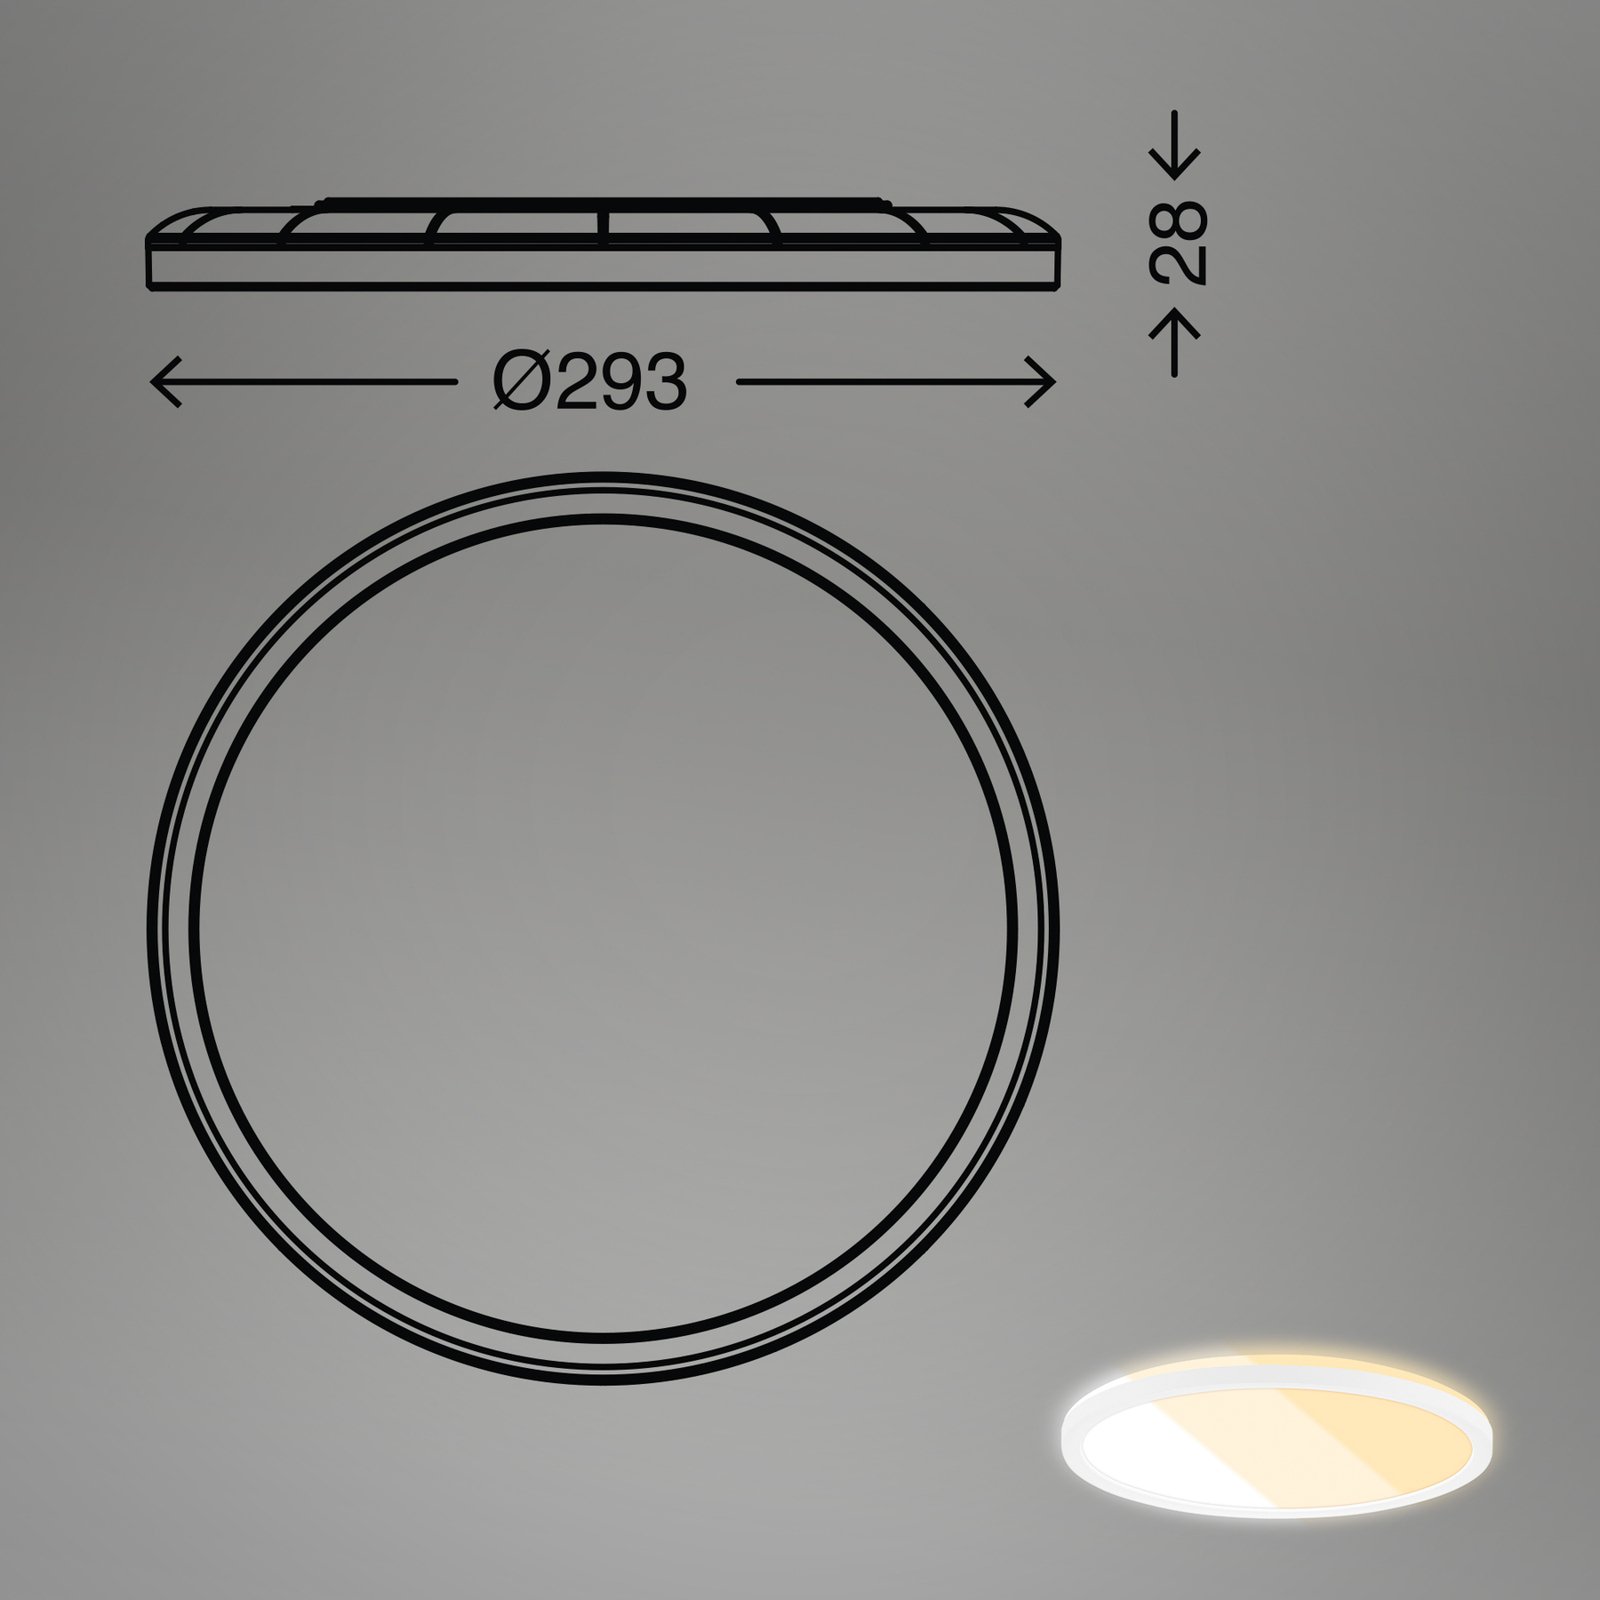 Panneau LED 7555 Couleur de lumière réglable, Ø 29,3 cm